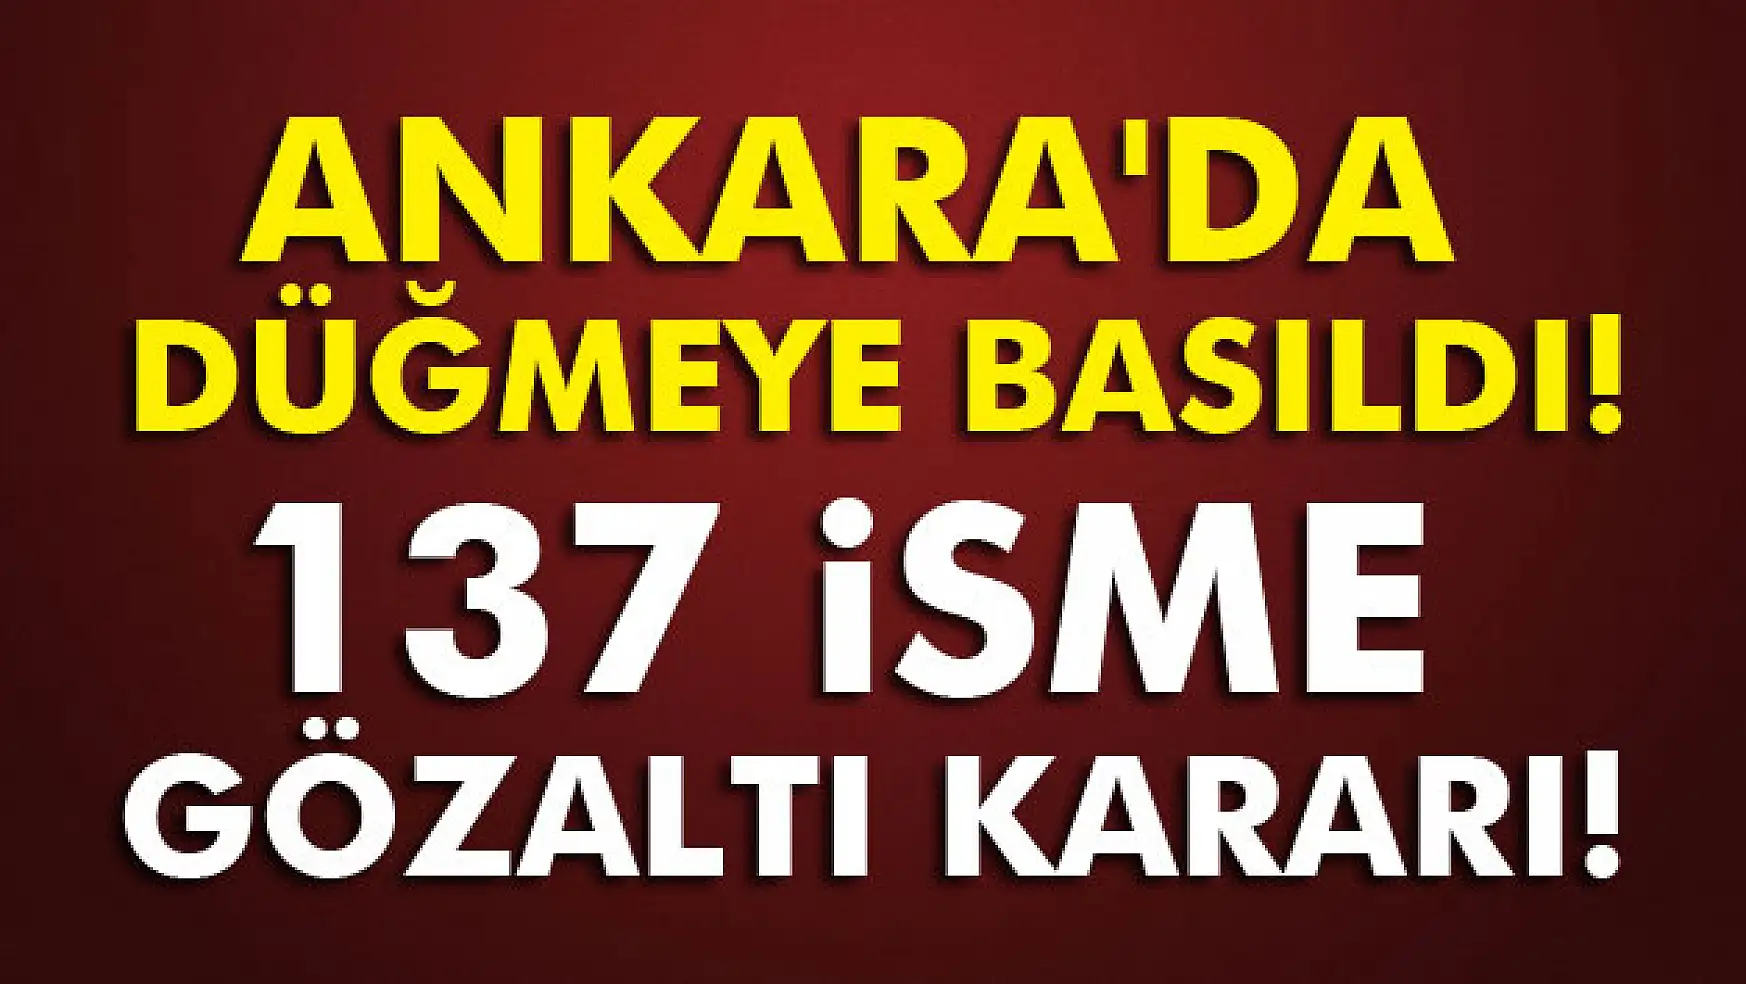 Ankara'da düğmeye basıldı:137 isme gözaltı kararı!